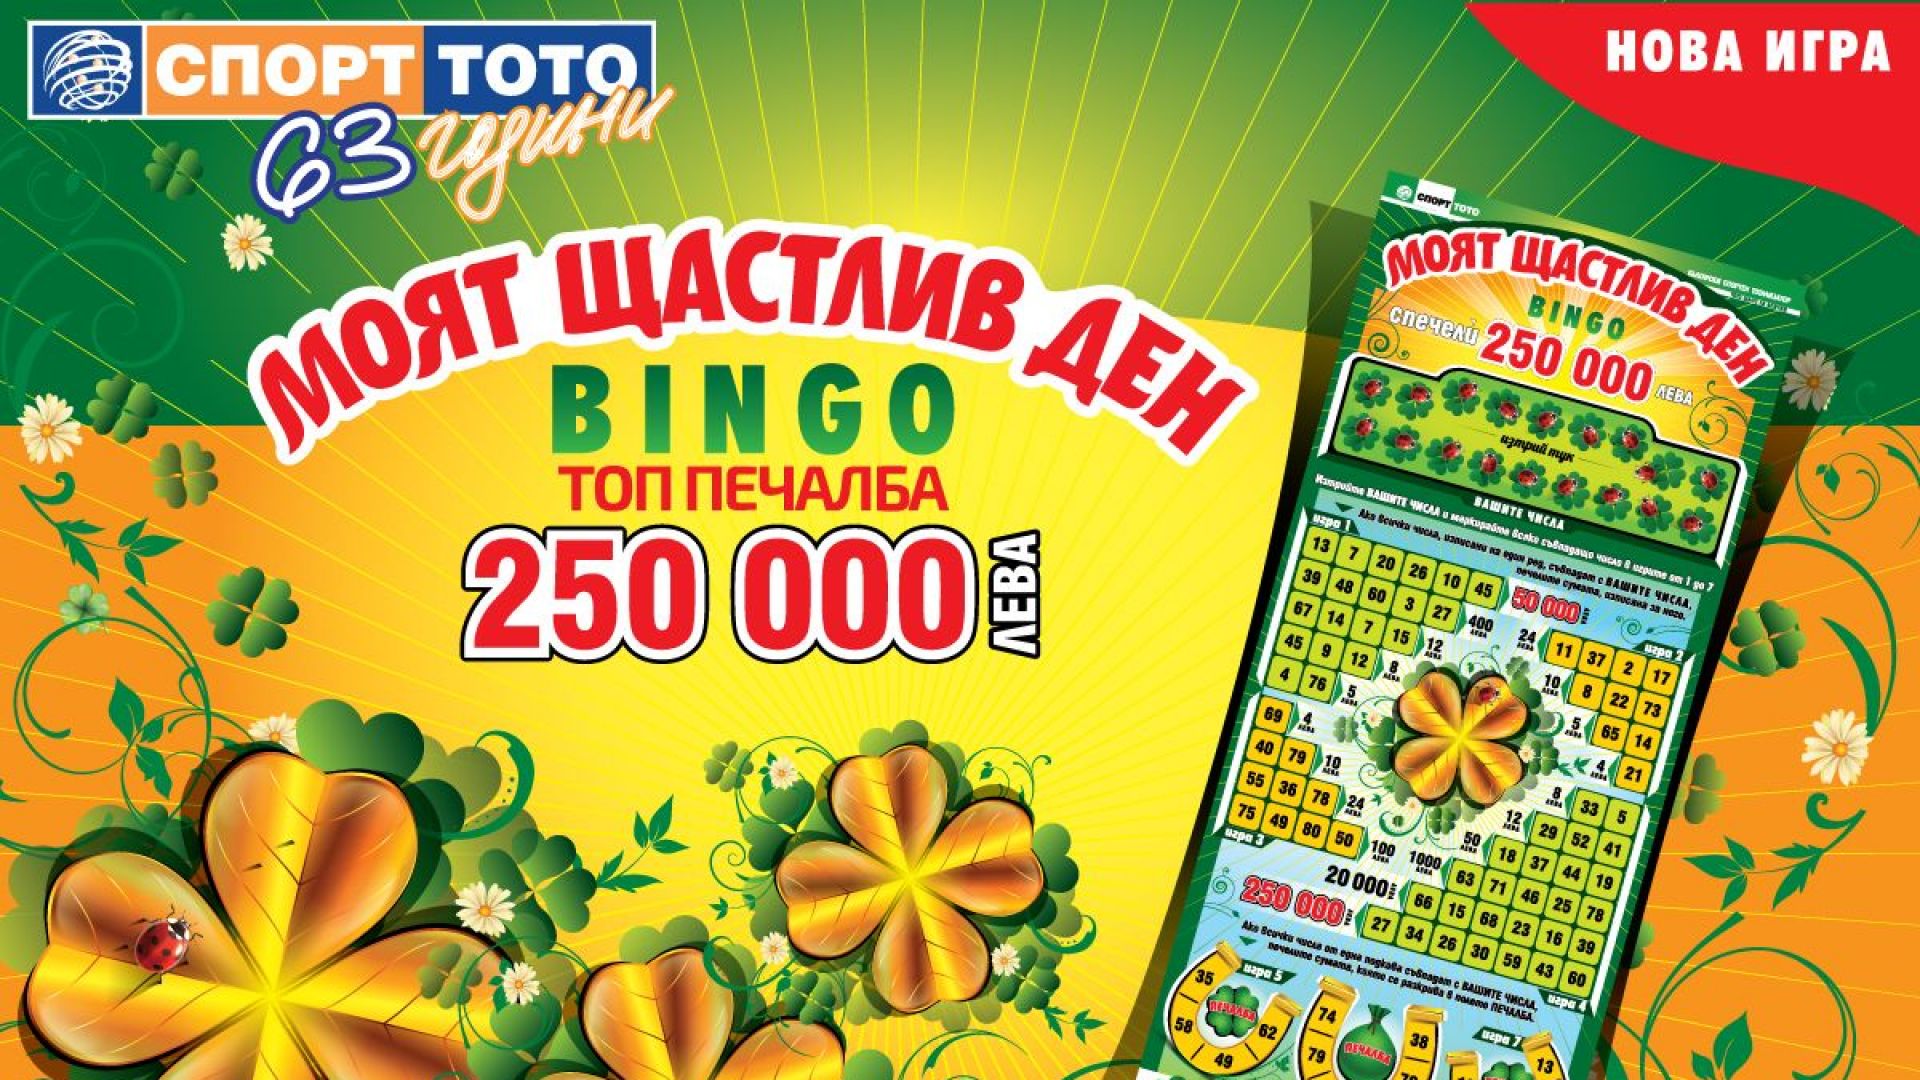 Щастливи дни с печалби за над 9 милиона лева в новата моментна лотарийна игра на Спорт Тото – "Моят щастлив ден - BINGO"